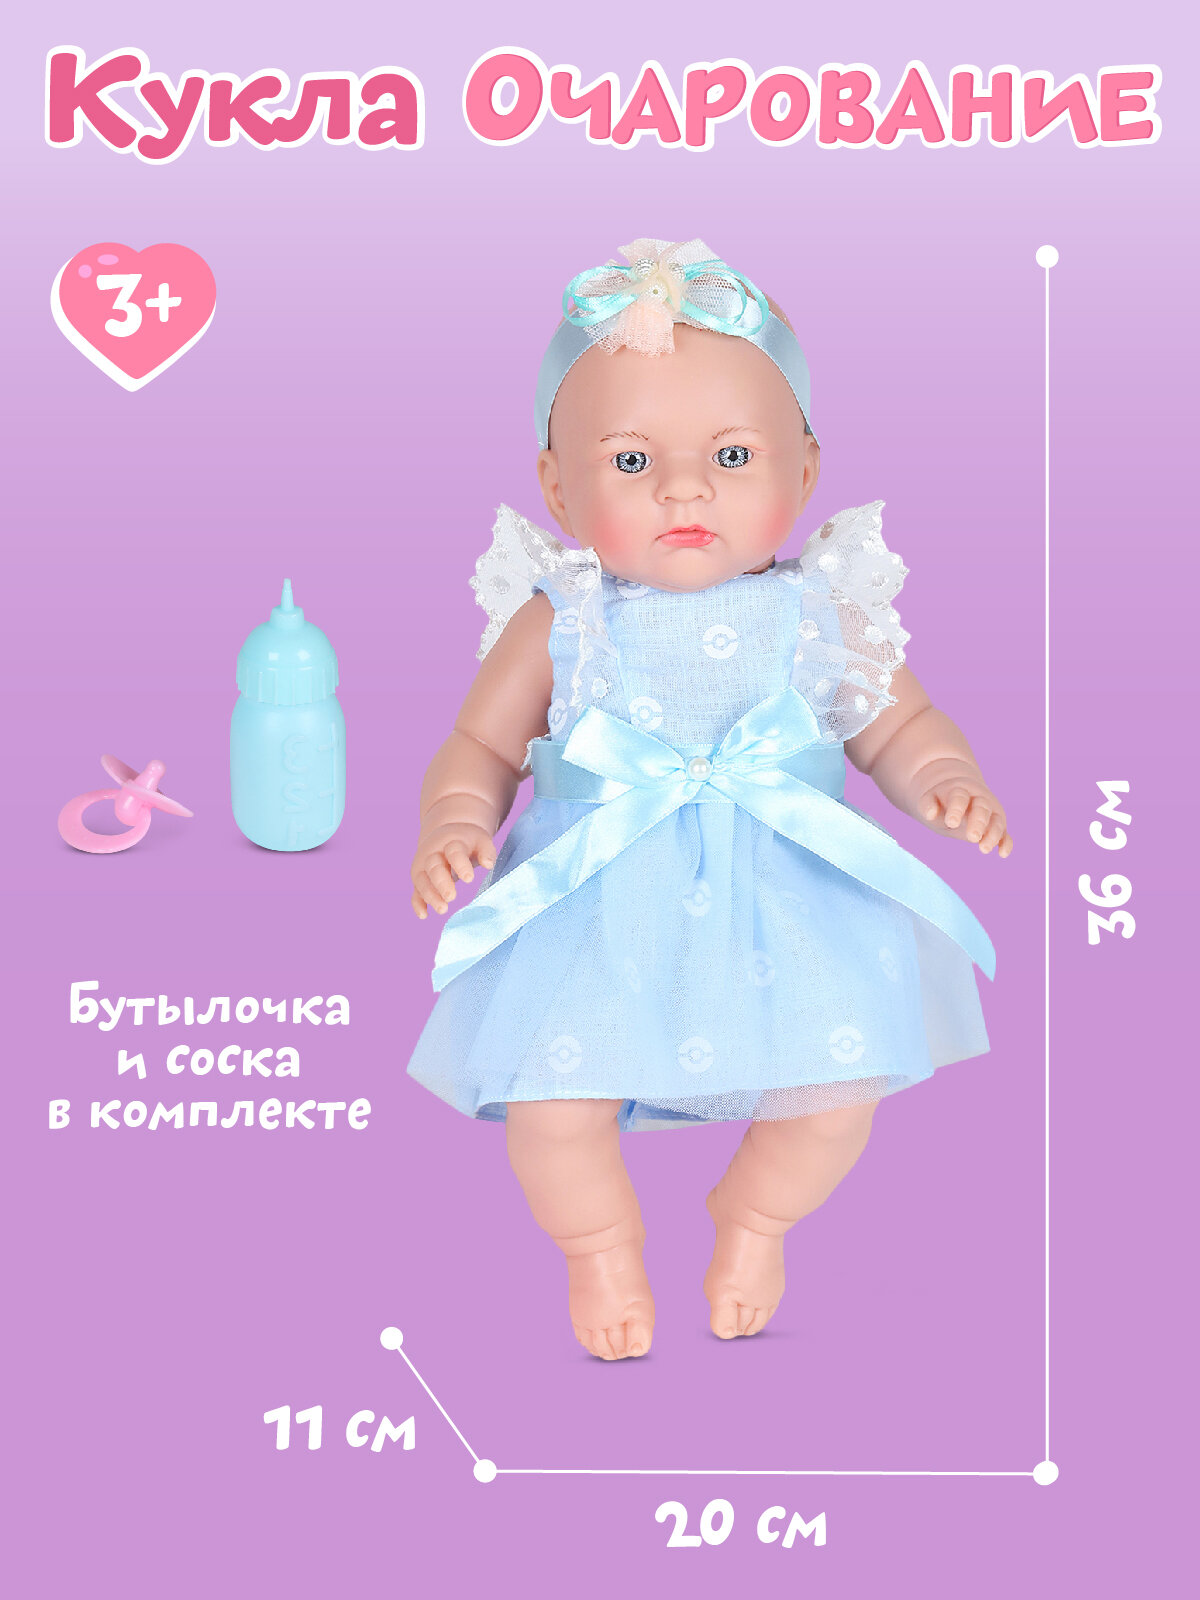 Кукла для девочек, Пупс 36 см серия "Очарование" ТМ "Amore Bello", подарок, для игры в дочки-матери, для детей, для девочек, цвет нежно-голубой